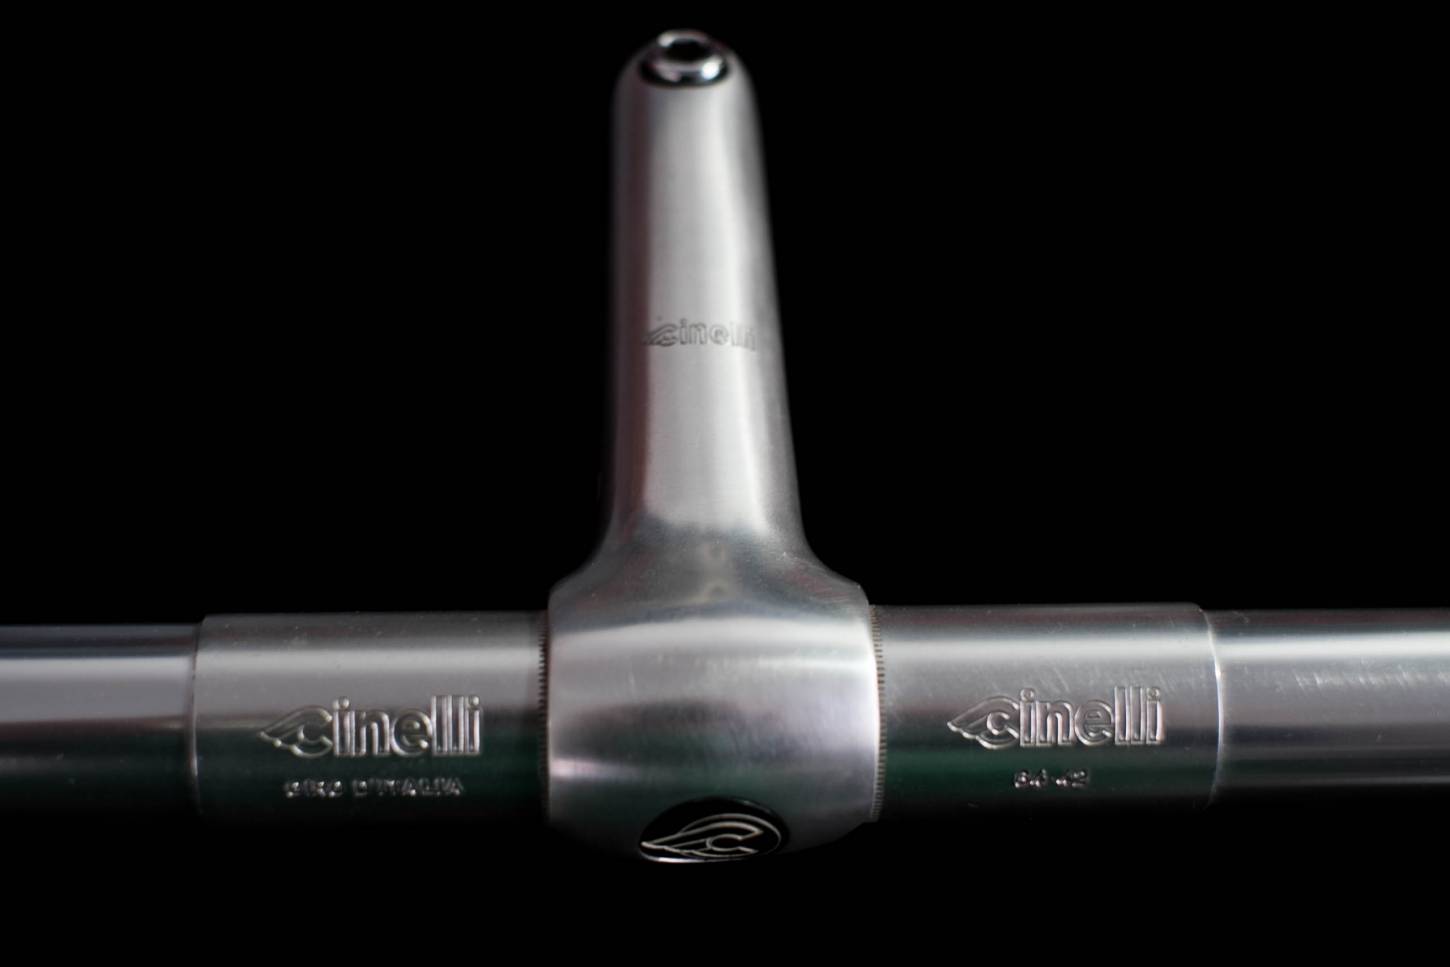 Manillar Cinelli Giro D'Italia con manillar de 42 mm de ancho y 95 mm de proyección Vintage Model 64